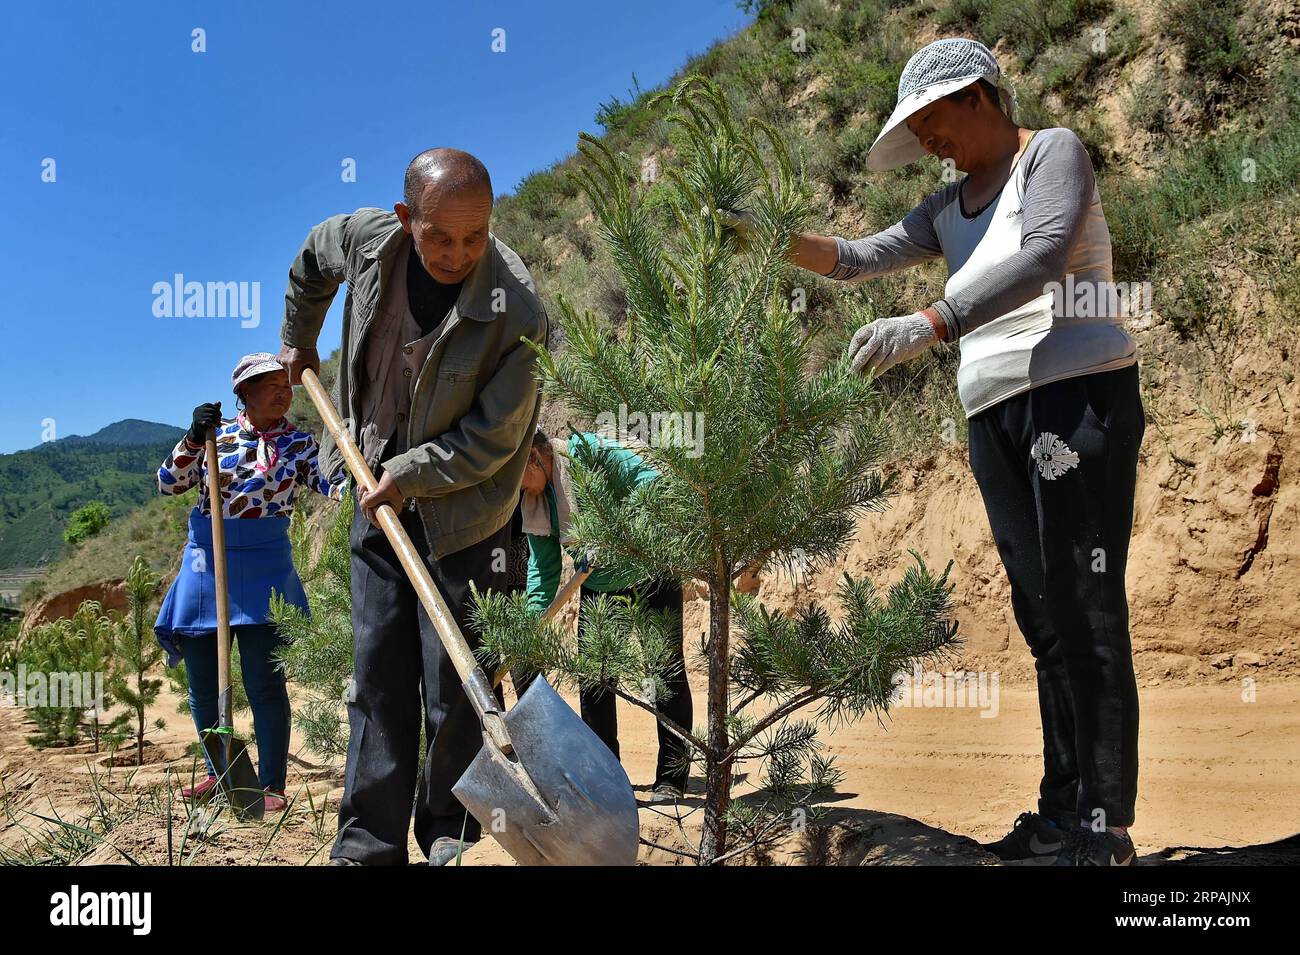 (190513) -- PECHINO, 13 maggio 2019 (Xinhua) -- abitanti del villaggio di Huili della contea di Lanxian piantano alberi sul monte Lyuliang, nella provincia dello Shanxi della Cina settentrionale, 26 maggio 2017. L'evento a tema dello Shanxi Day, che si è tenuto nell'ambito della mostra internazionale di orticoltura di Pechino, ha avuto inizio a Pechino il 12 maggio. Lo Shanxi Garden mette in mostra il suo impegno nell'ecologia e nel rimboschimento, nonché il suo concetto di sviluppo verde all'expo in corso. Non facendo più affidamento principalmente sulla sua industria carboniera per la crescita, Shanxi si è impegnata a sviluppare energia pulita e altre industrie emergenti per trovare un equilibrio Foto Stock